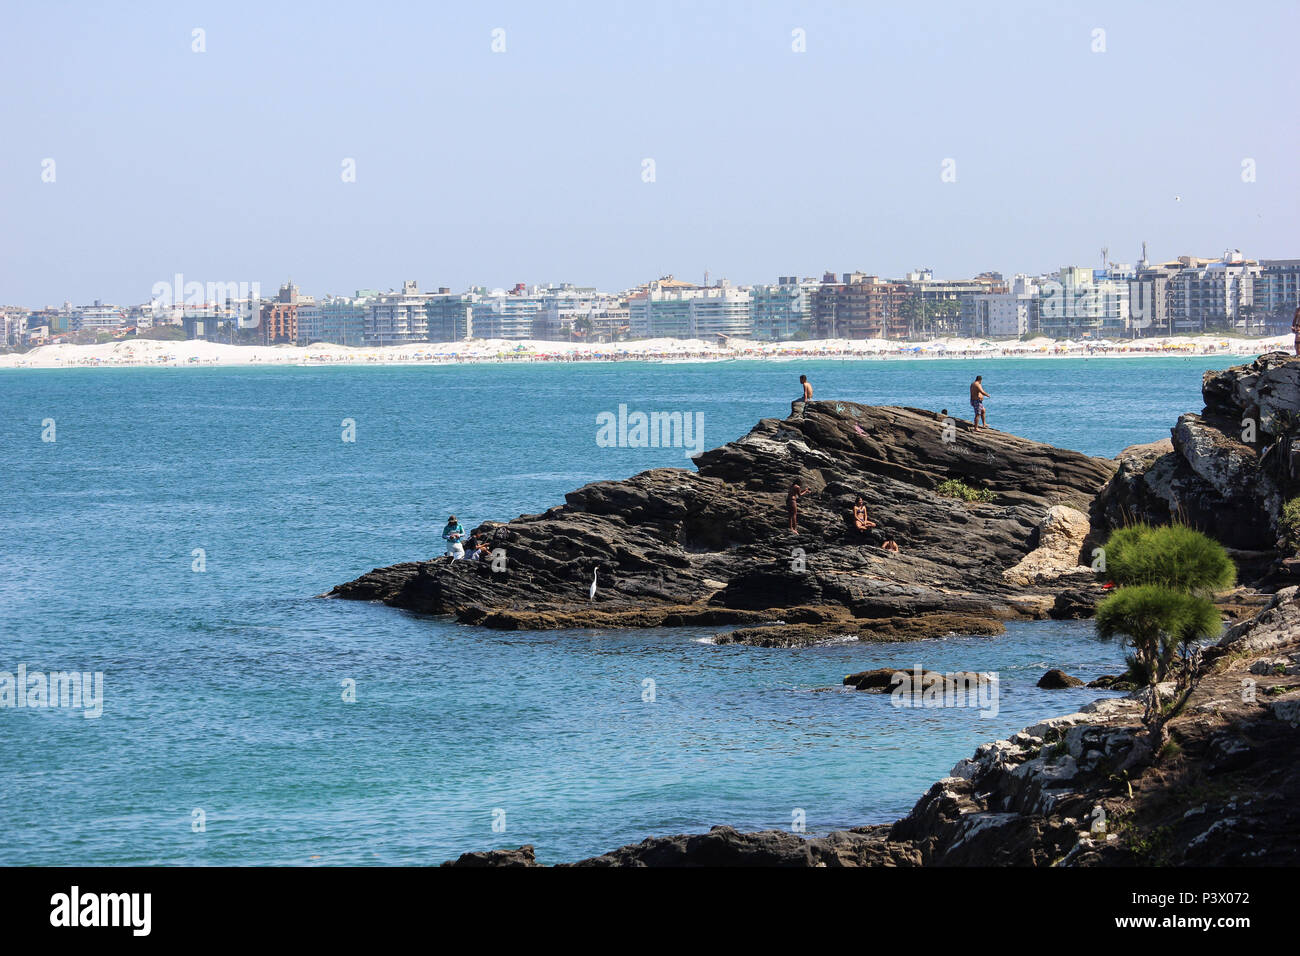 Praia do Forte vista de Rochas imediações nas do Forte São Mateus. Principais pontos turísticos de Cabo Frio, na região dos Lagos, no Rio de Janeiro. Foto Stock